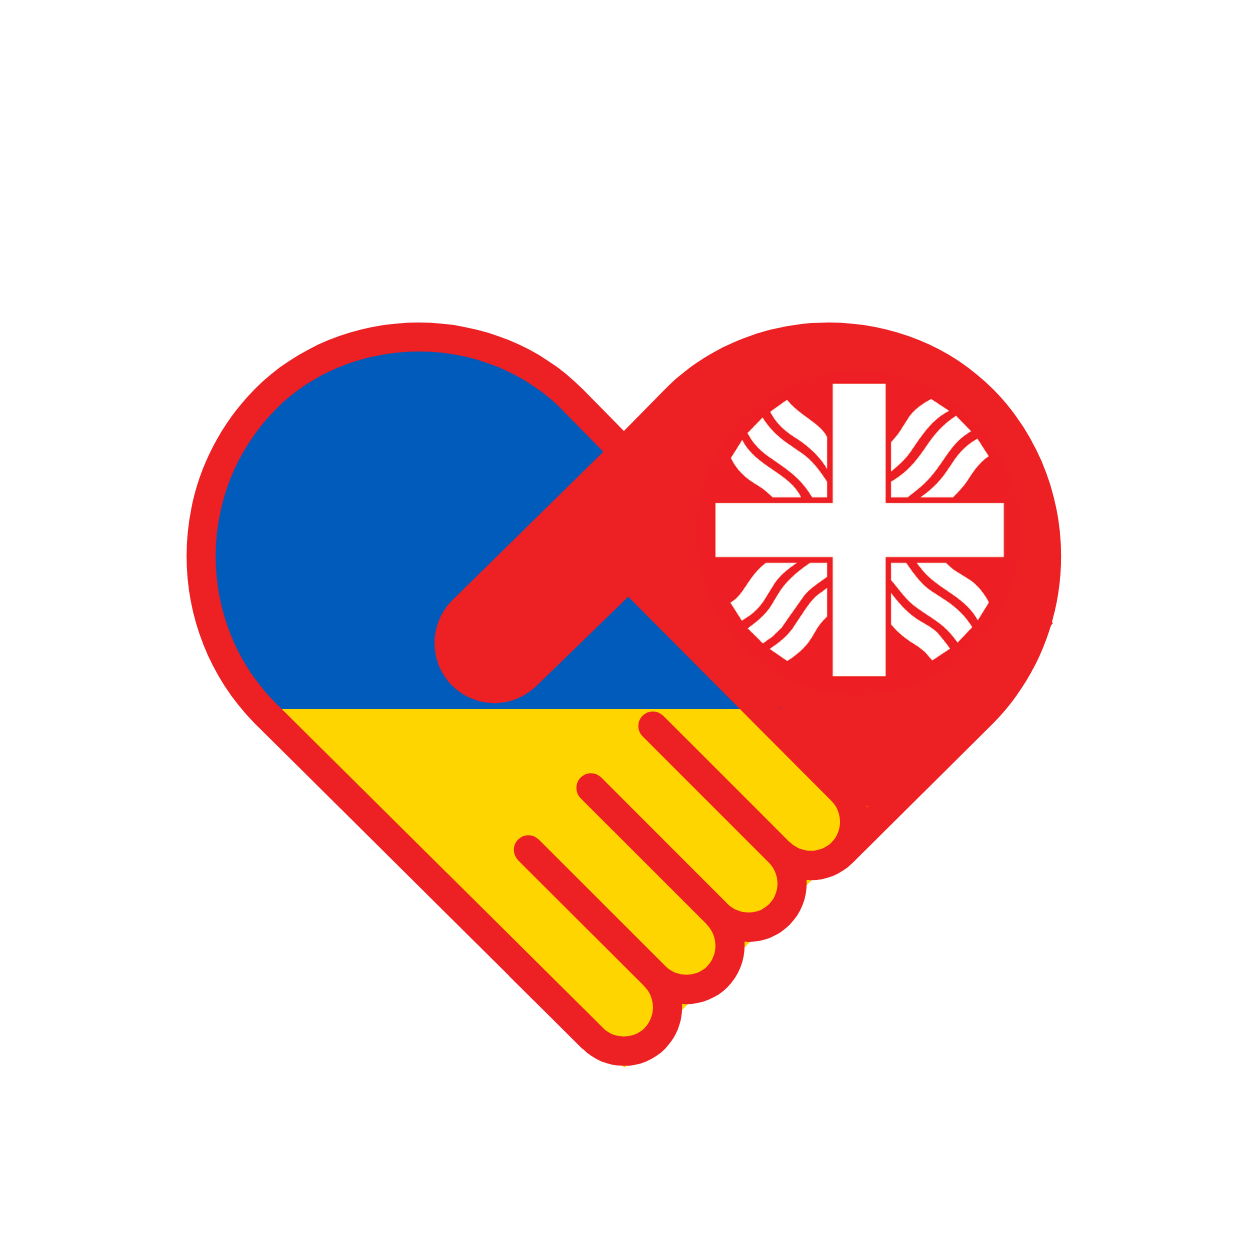 Ukrainos palaikymo ženkle – Caritas solidarumo vertybės